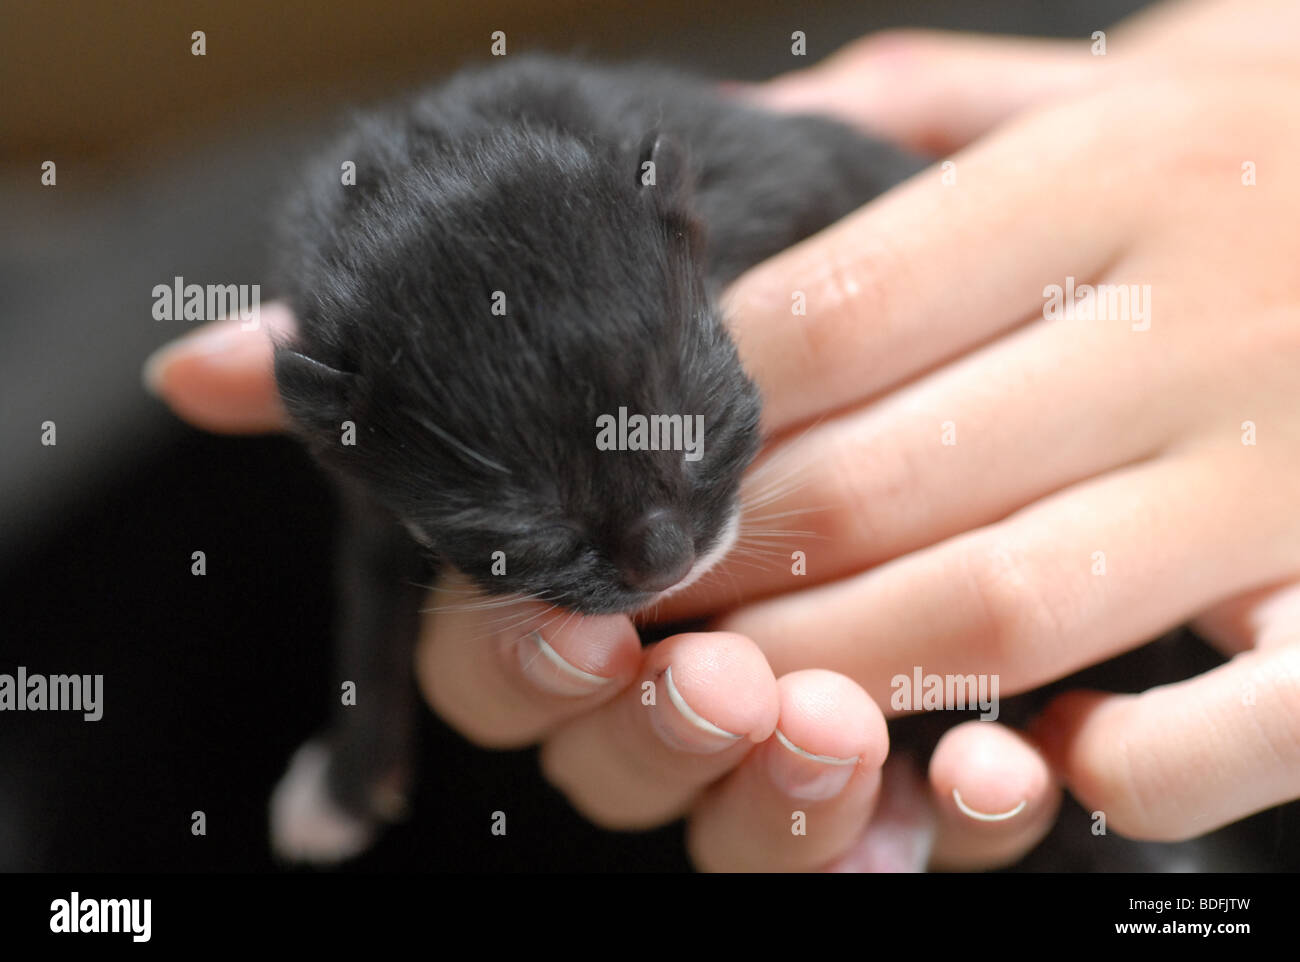 new born kitten Stock Photo